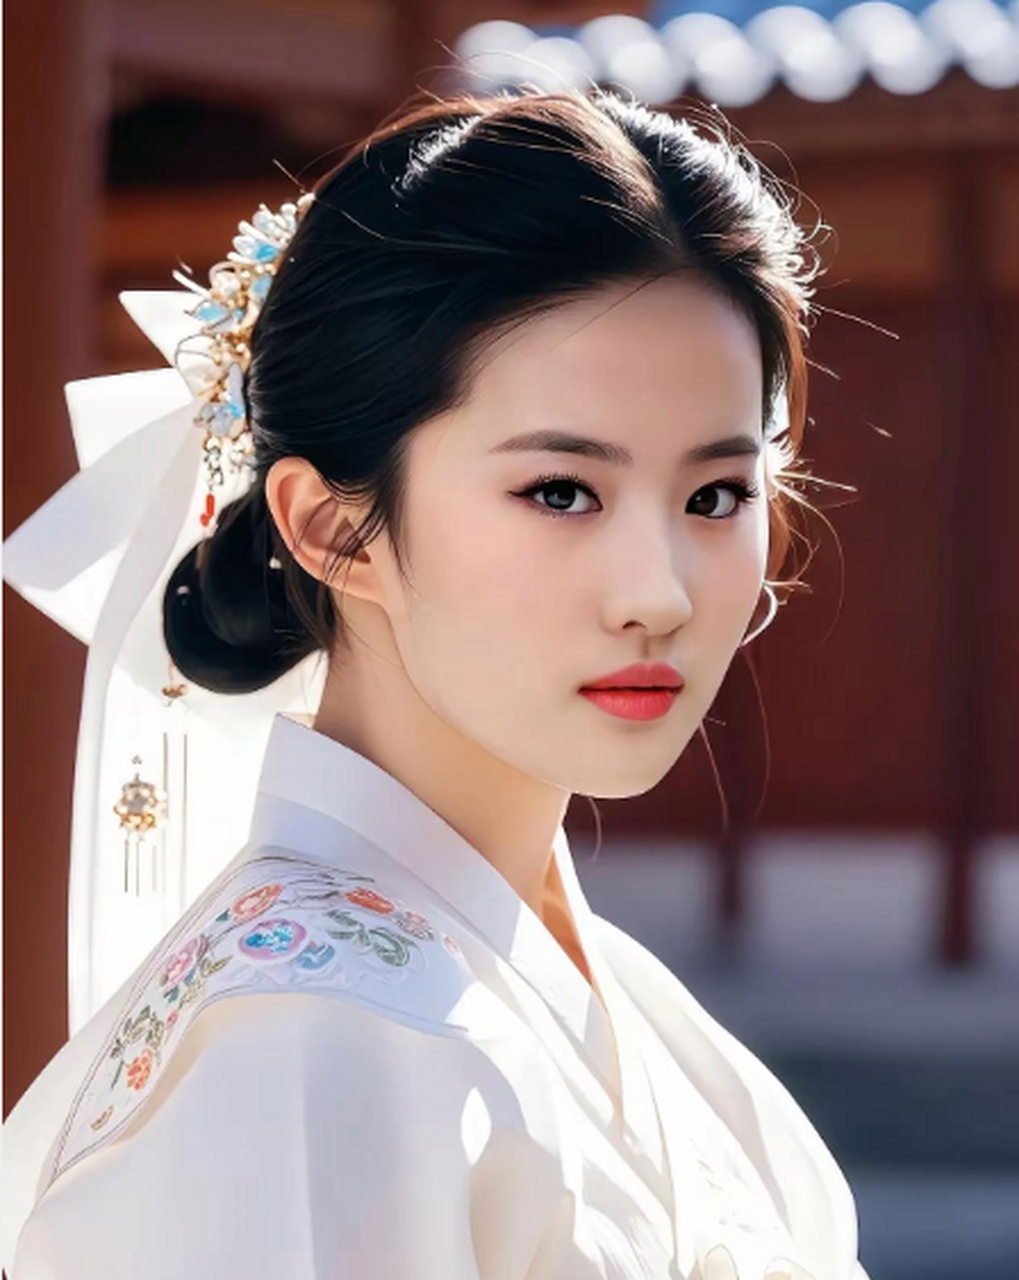 刘亦菲朝鲜族服饰造型,不愧是神仙姐姐,这顔值真是绝了呀,最后一张